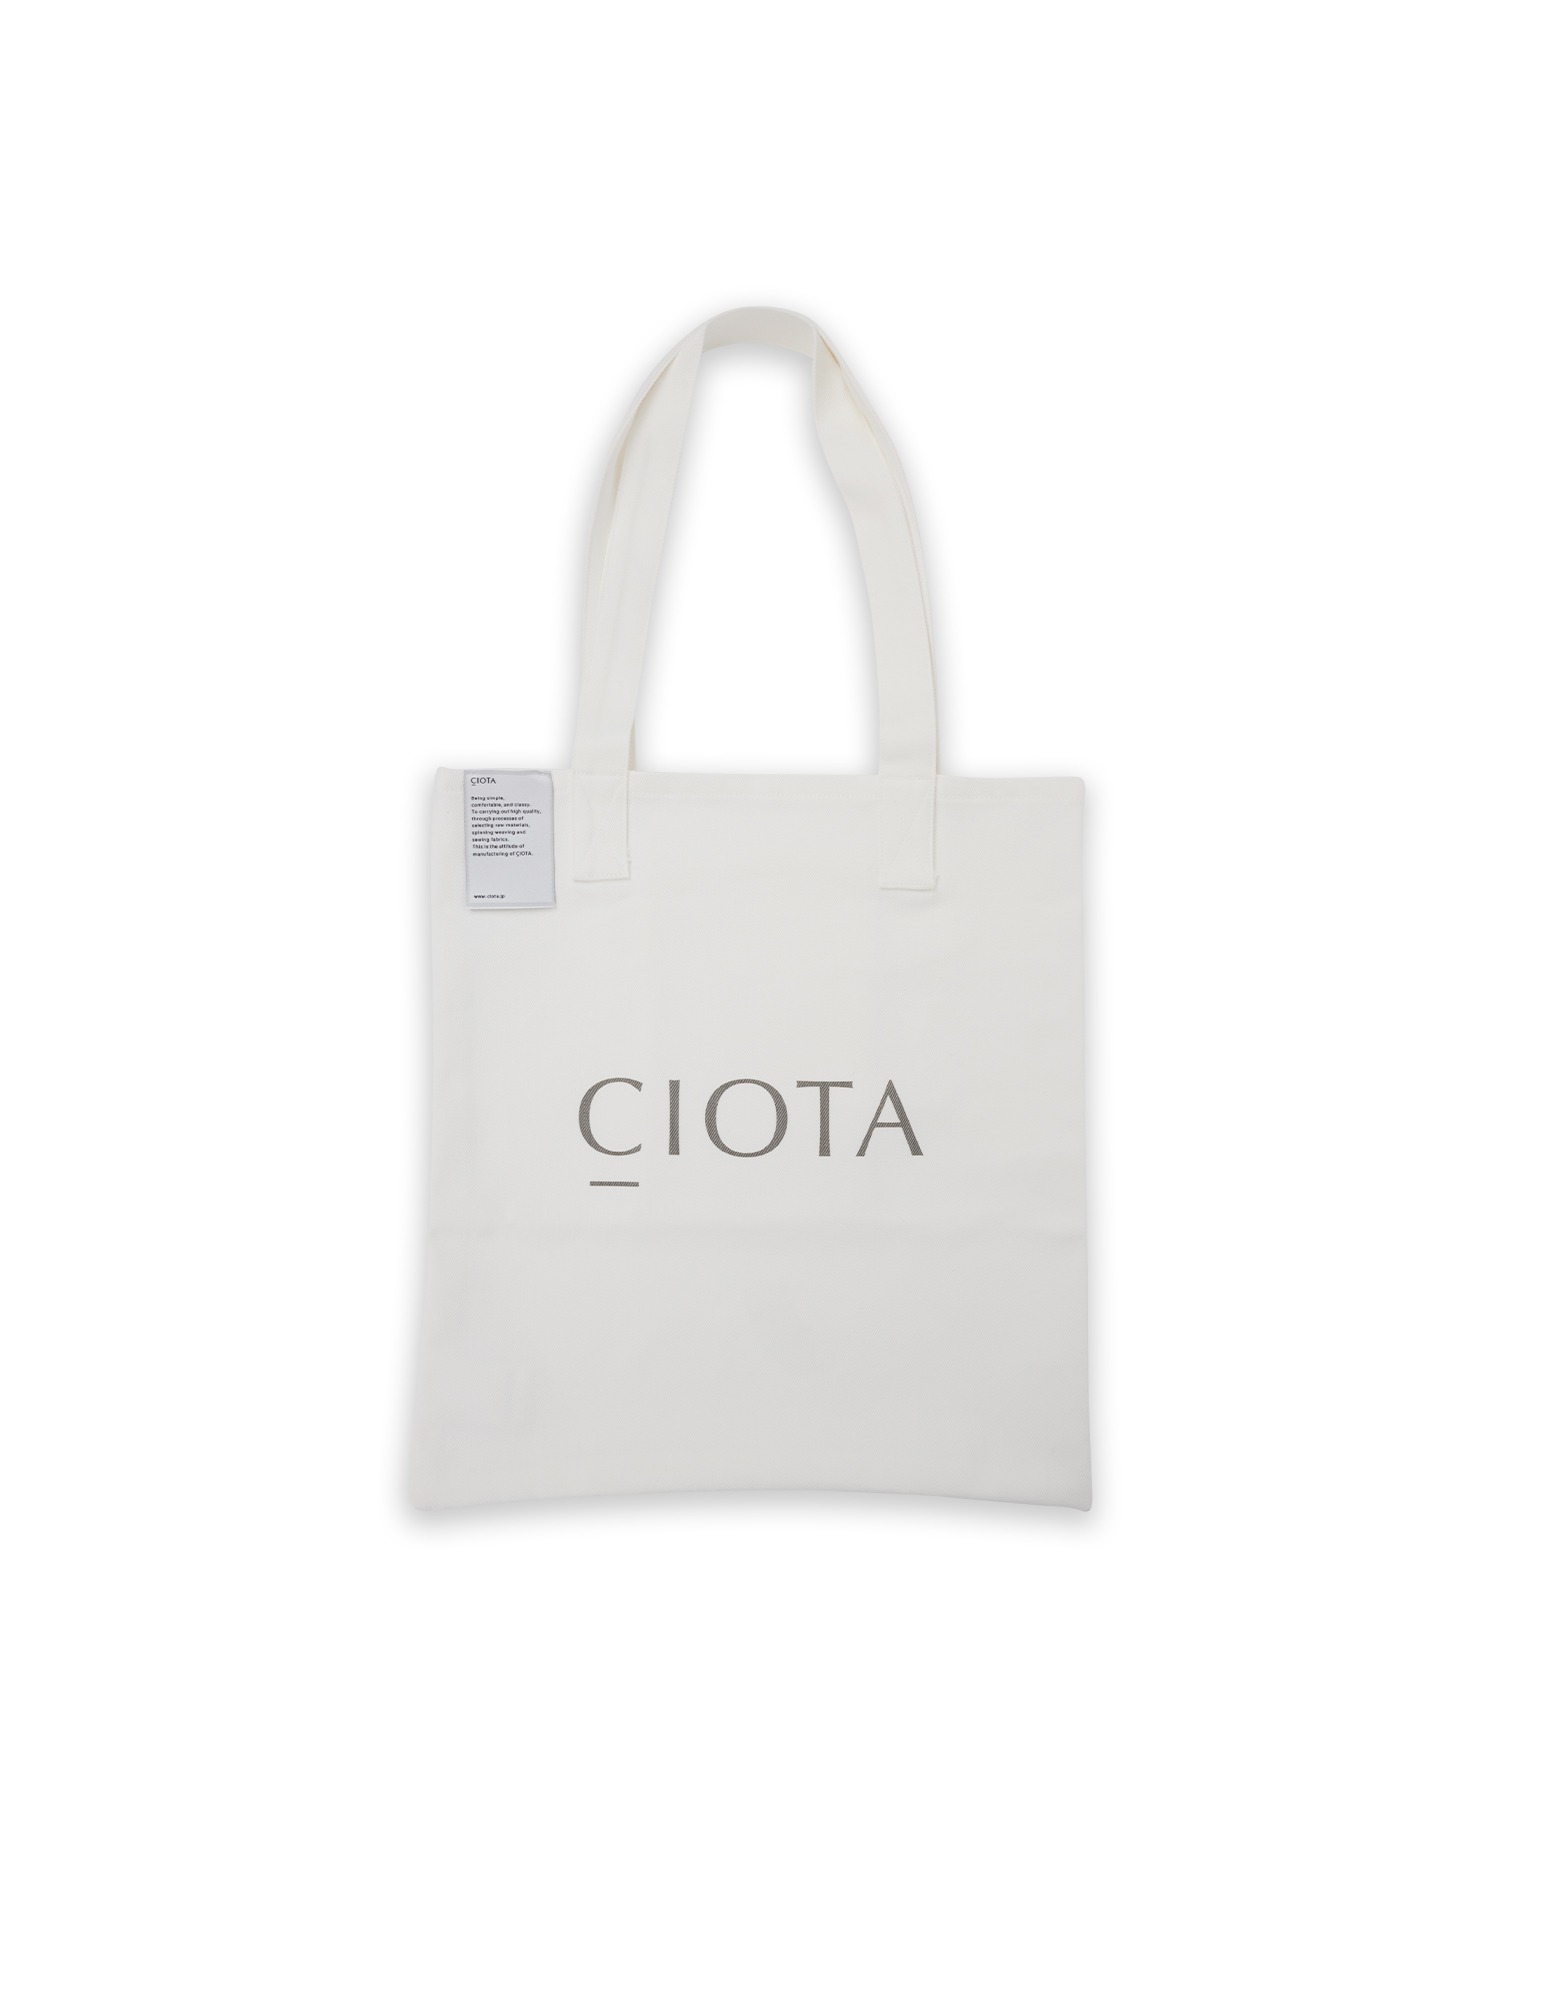 Ciota Tote Bag (White)